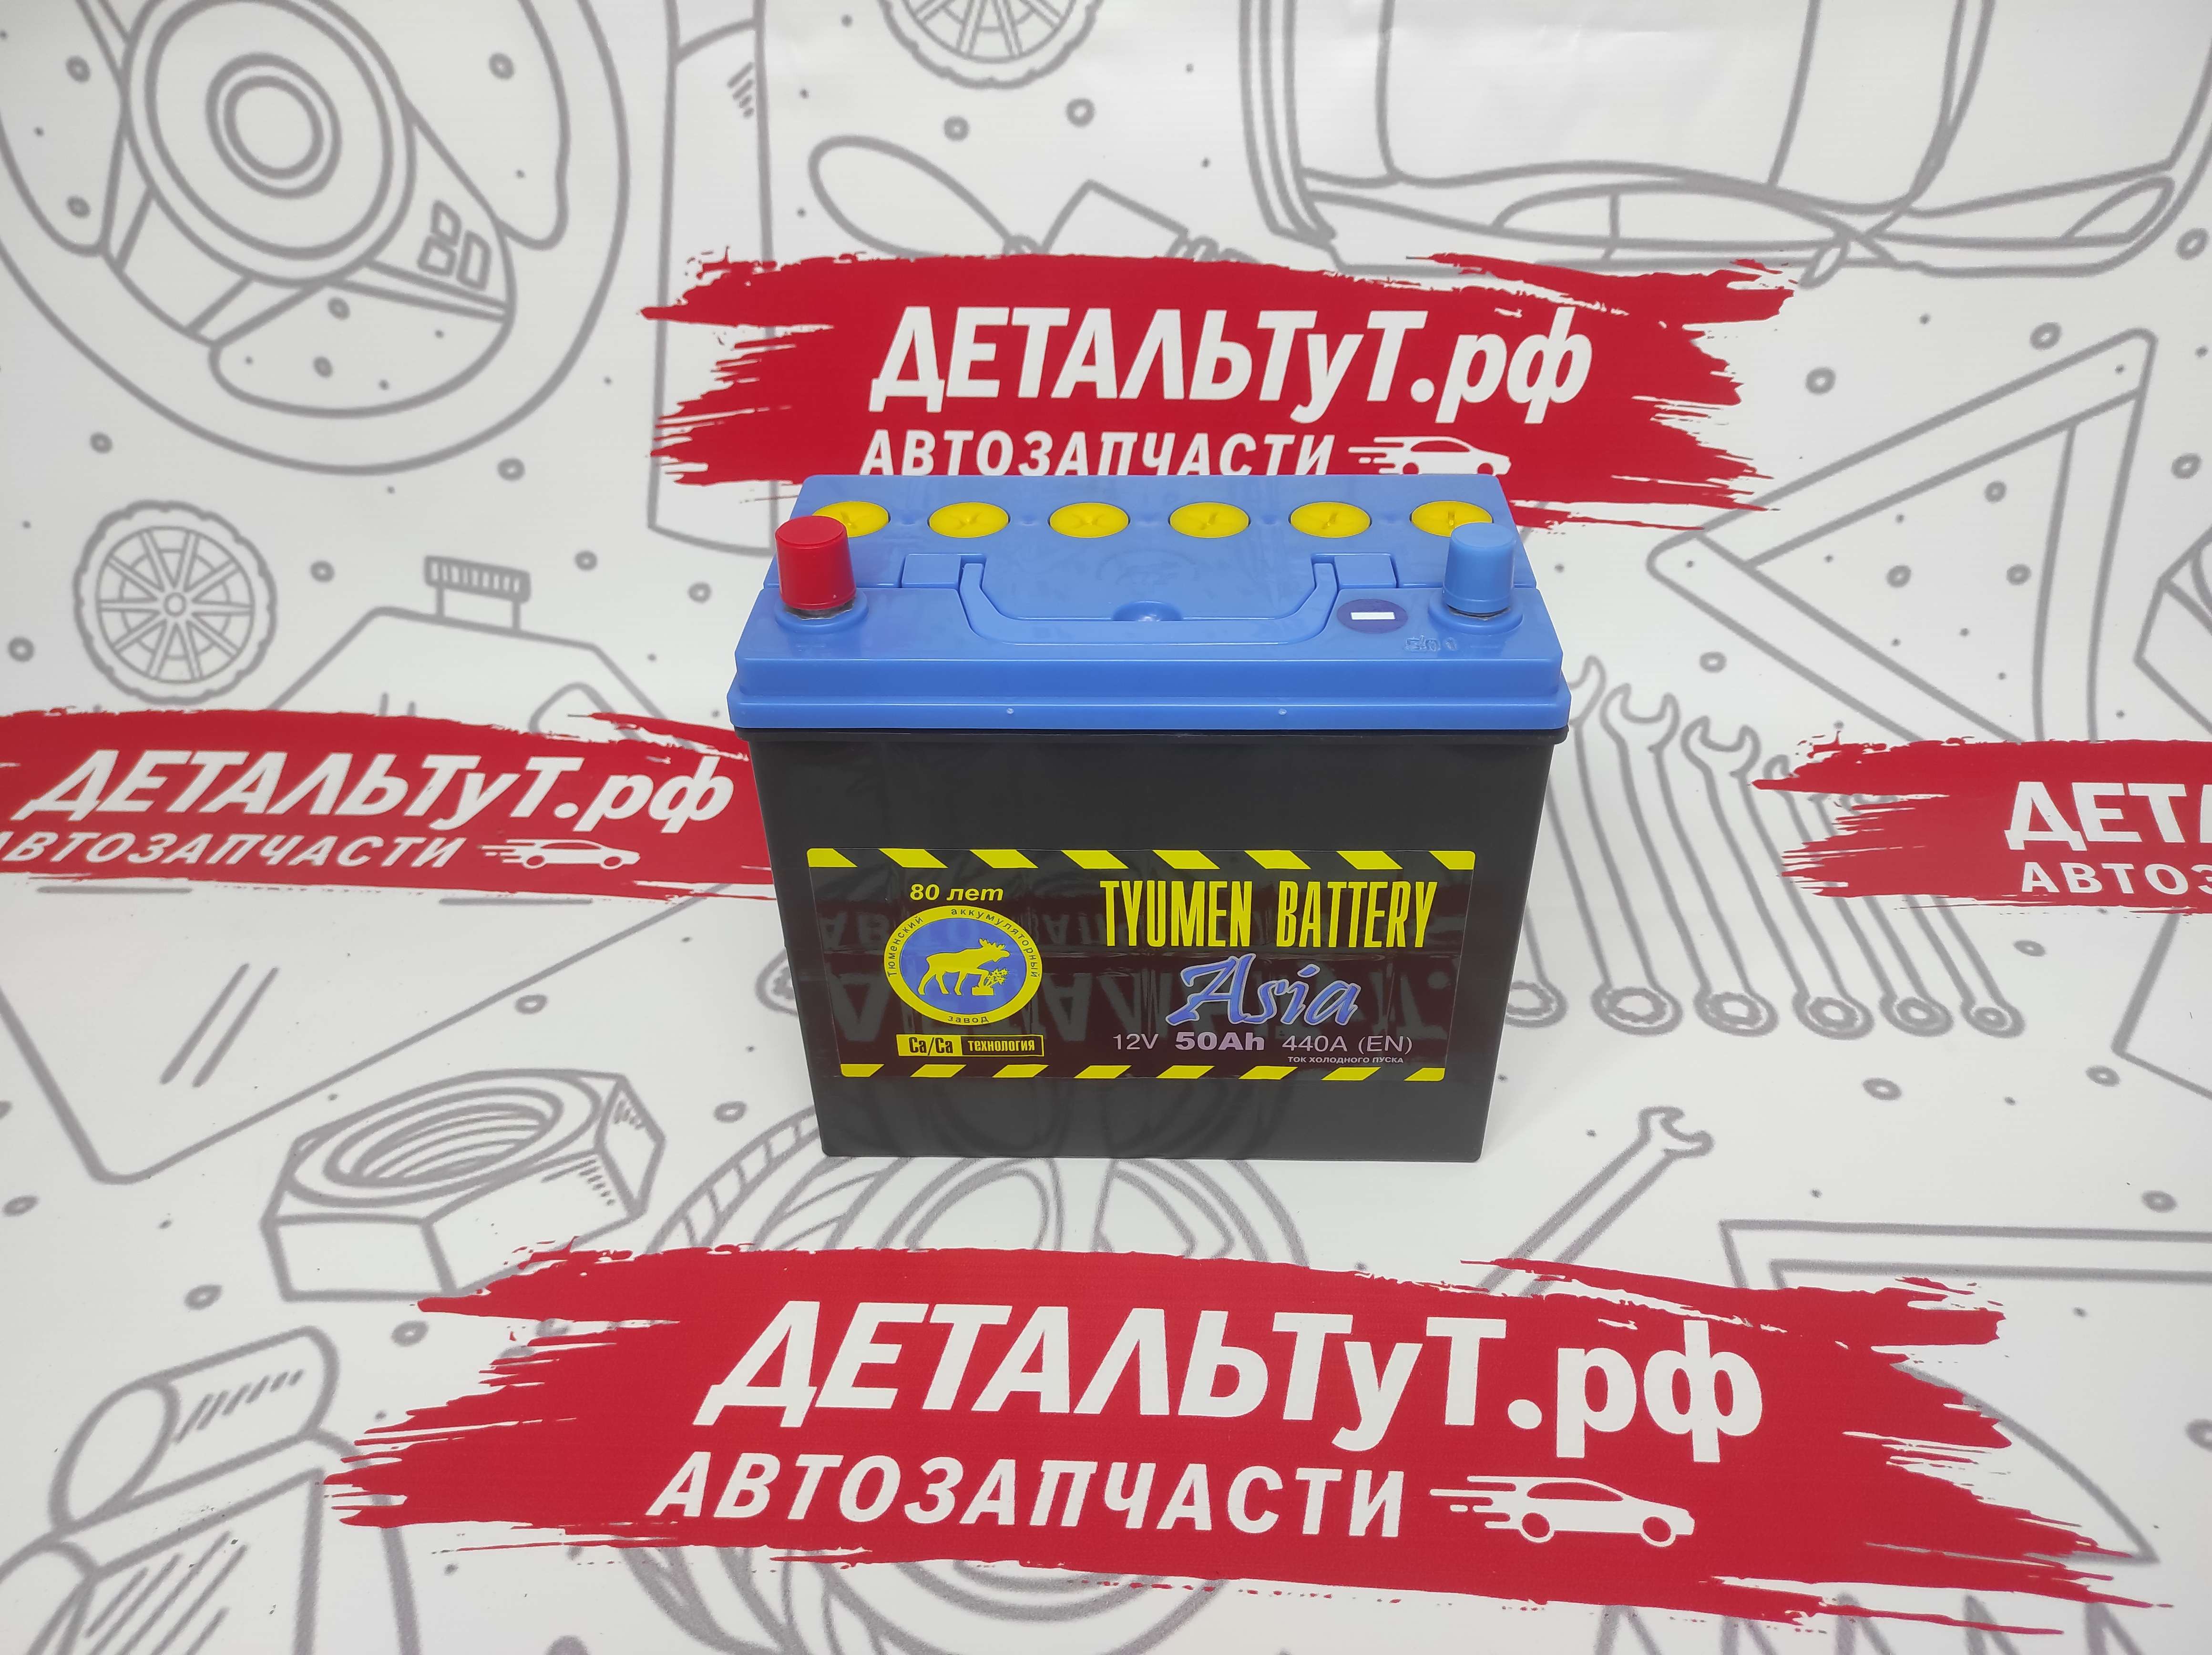 TUMEN BATTERY Батарея аккумуляторная свинцовая (Ca/Ca) 50Ah 440A